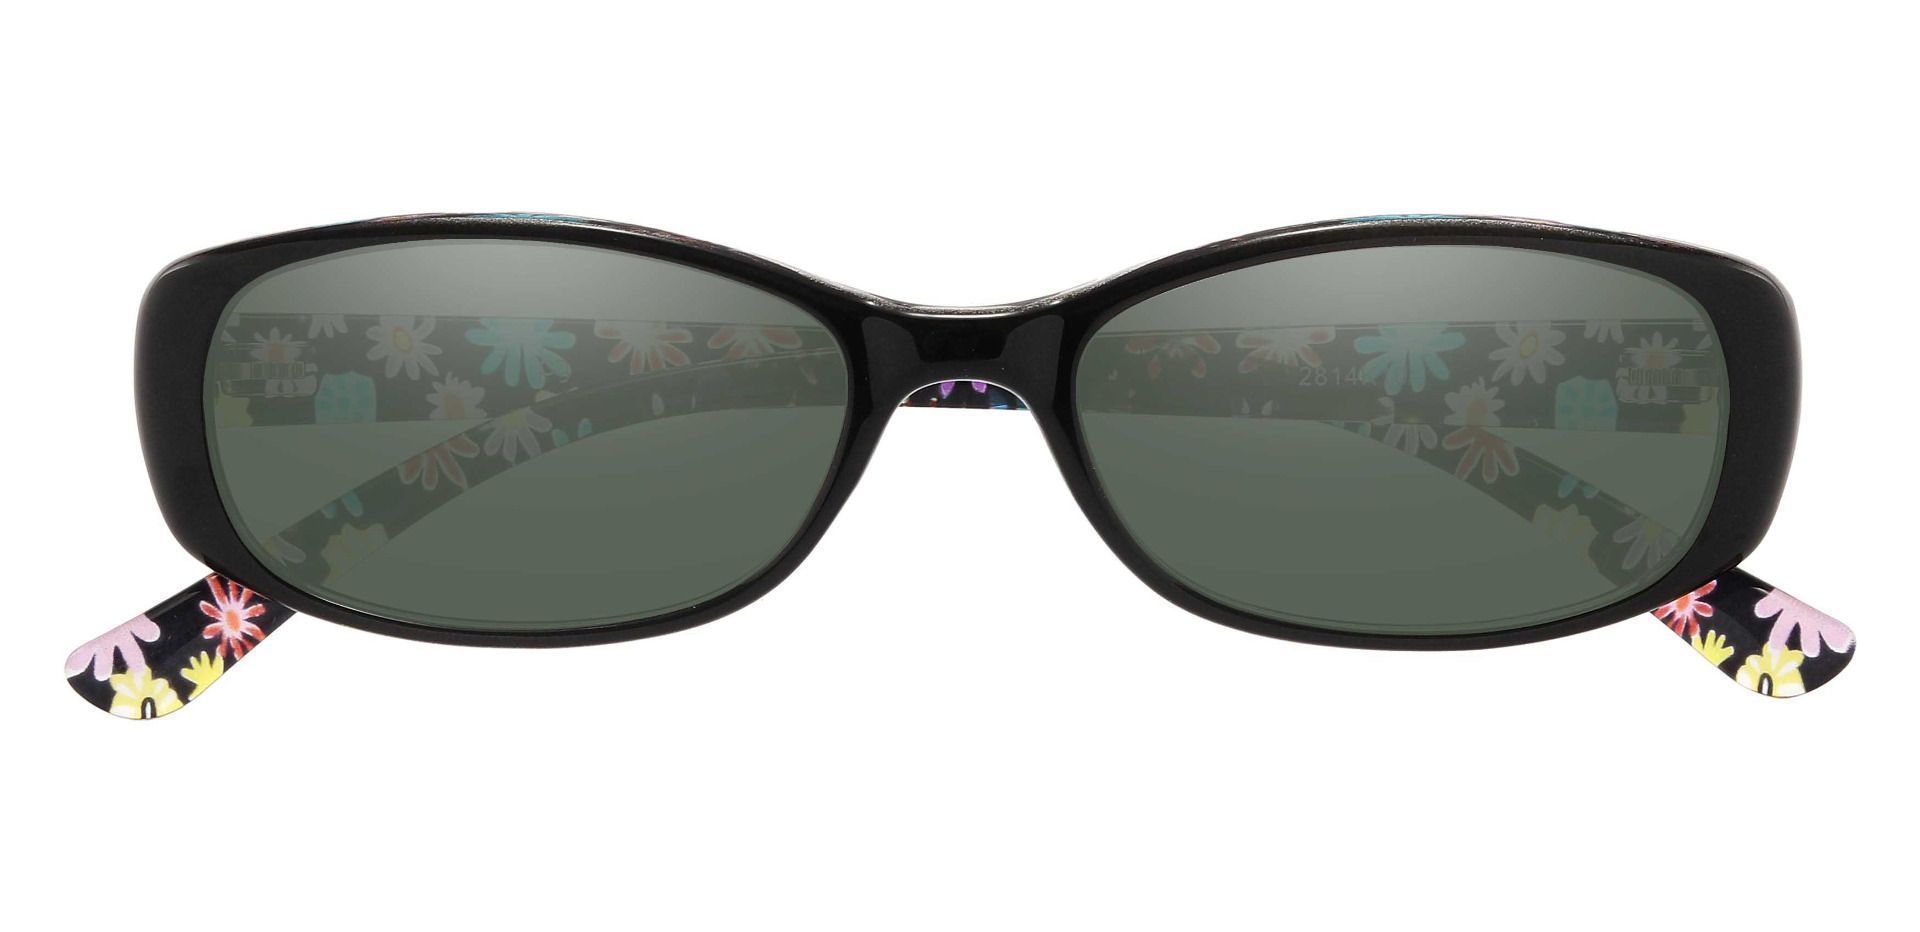 Bethesda Rectangle Progressive Sunglasses - Black Frame With Green Lenses